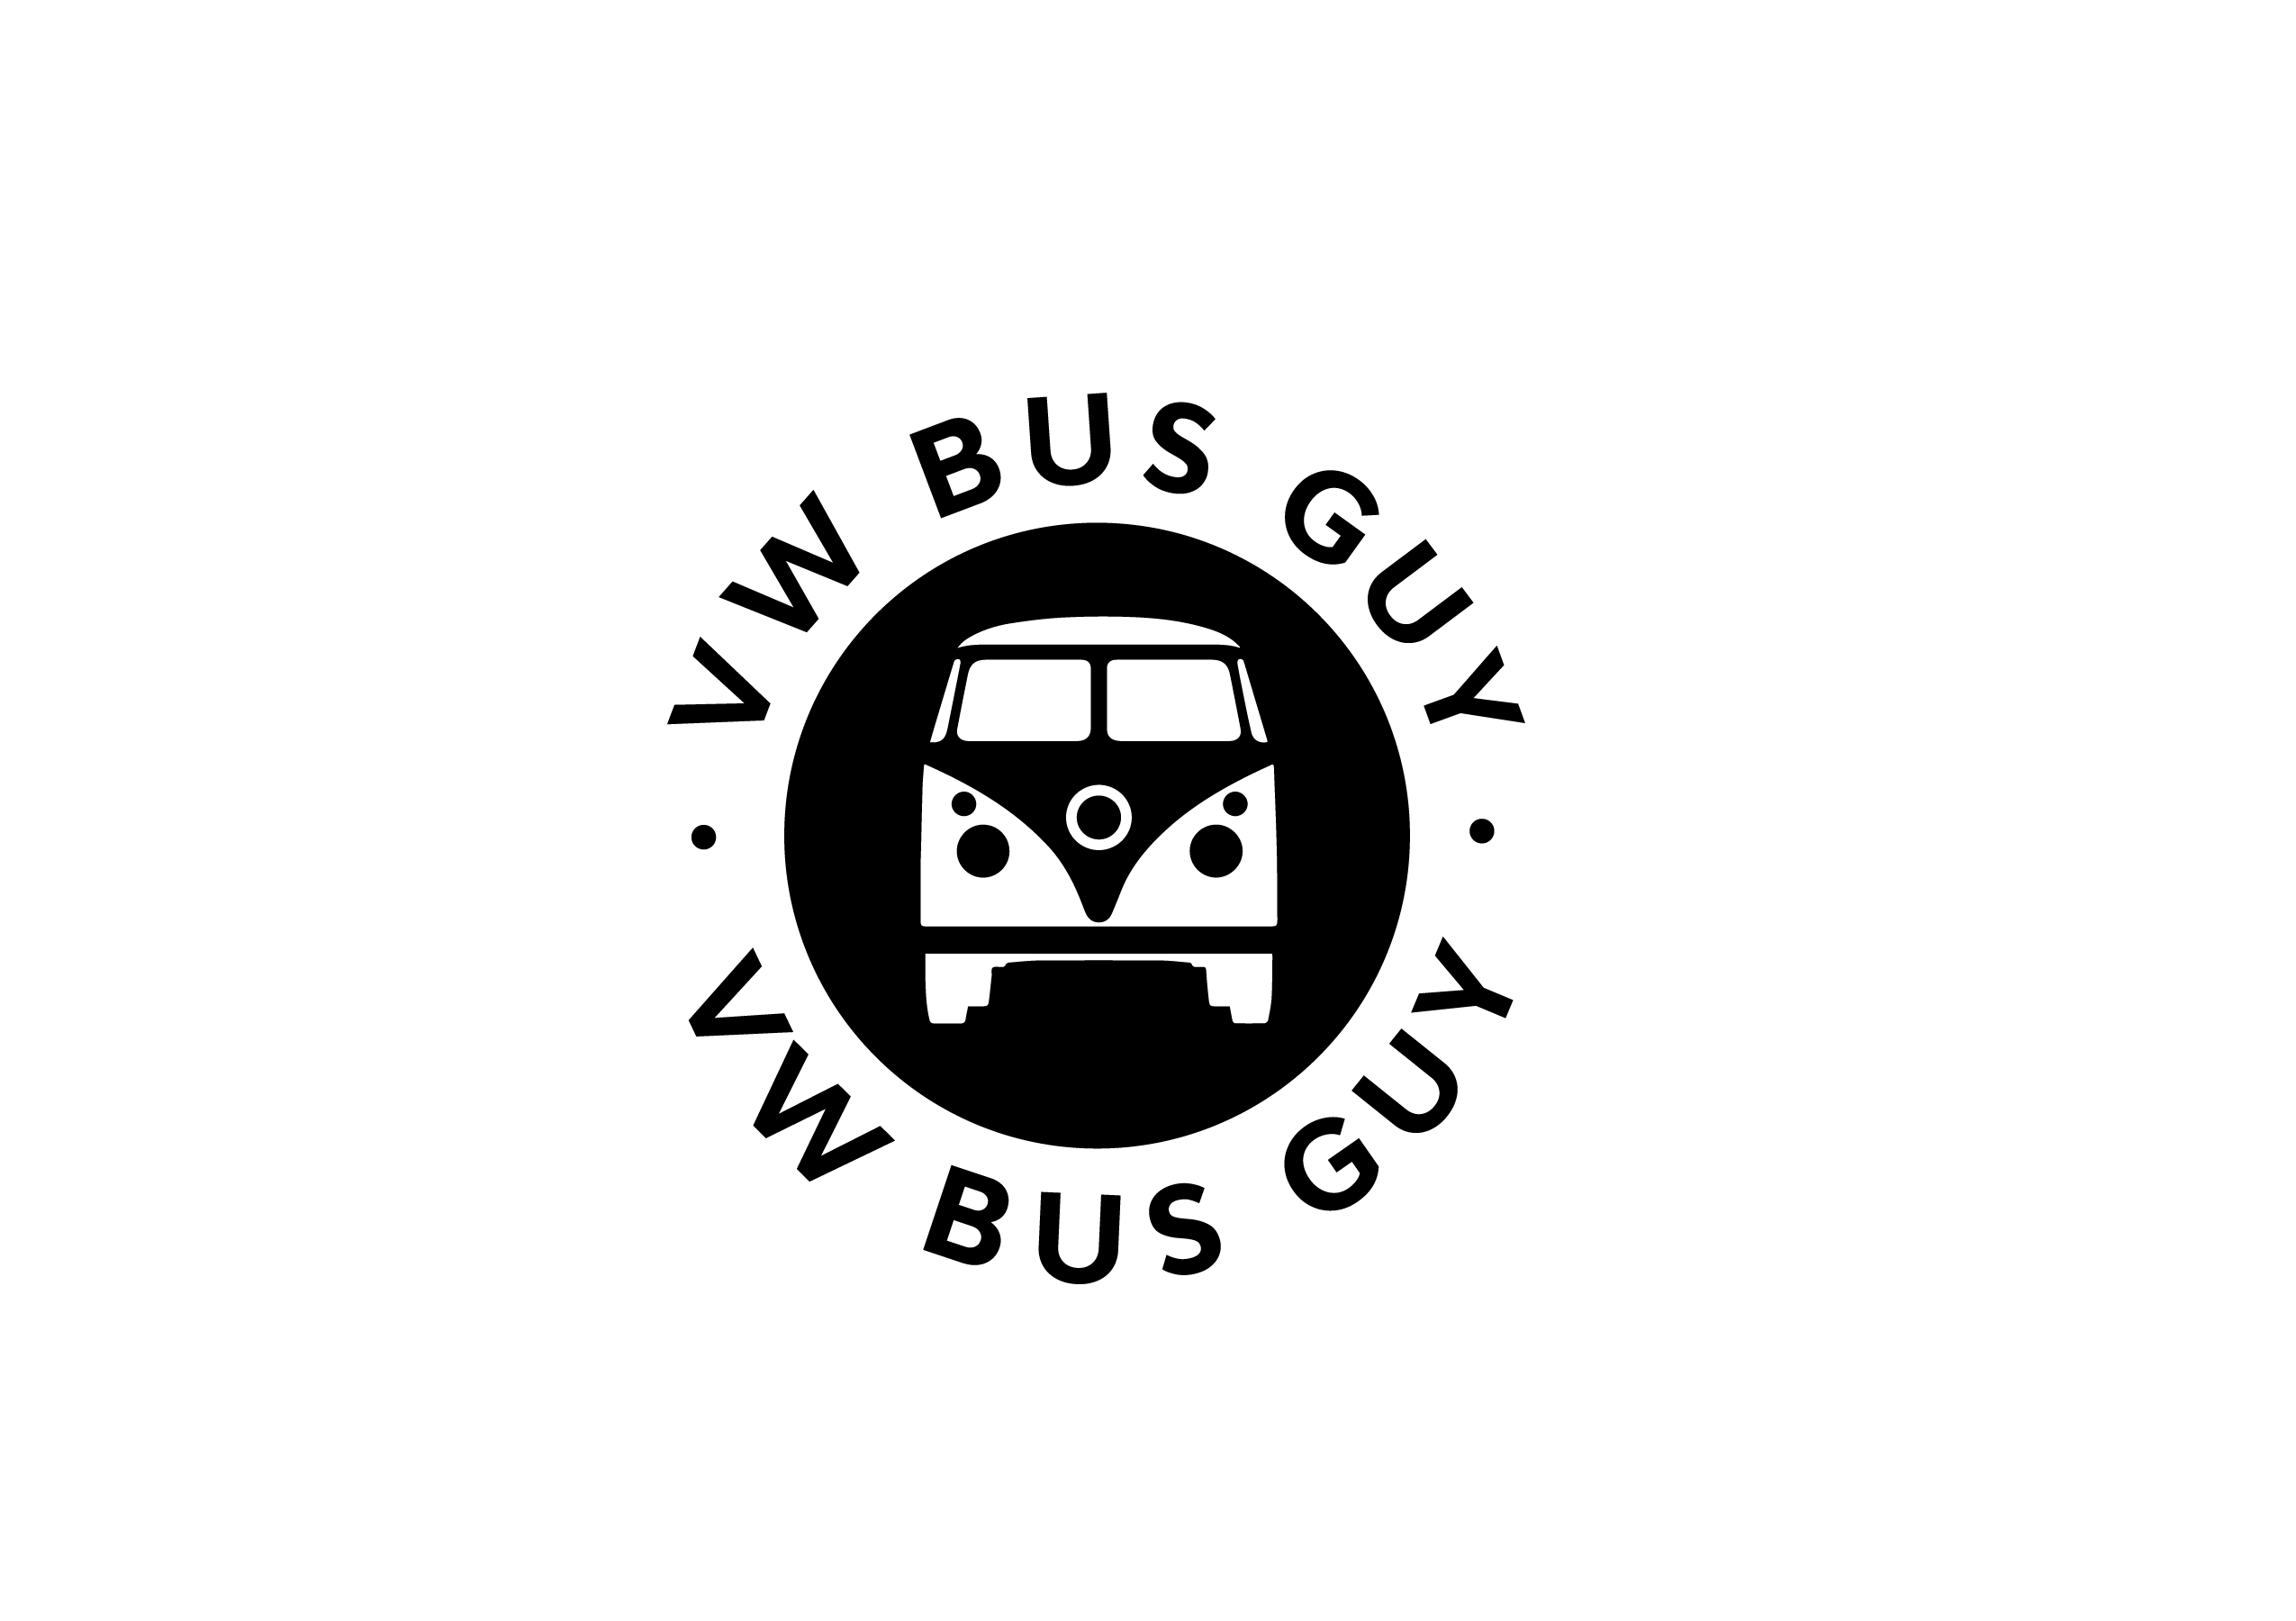 VW black logo